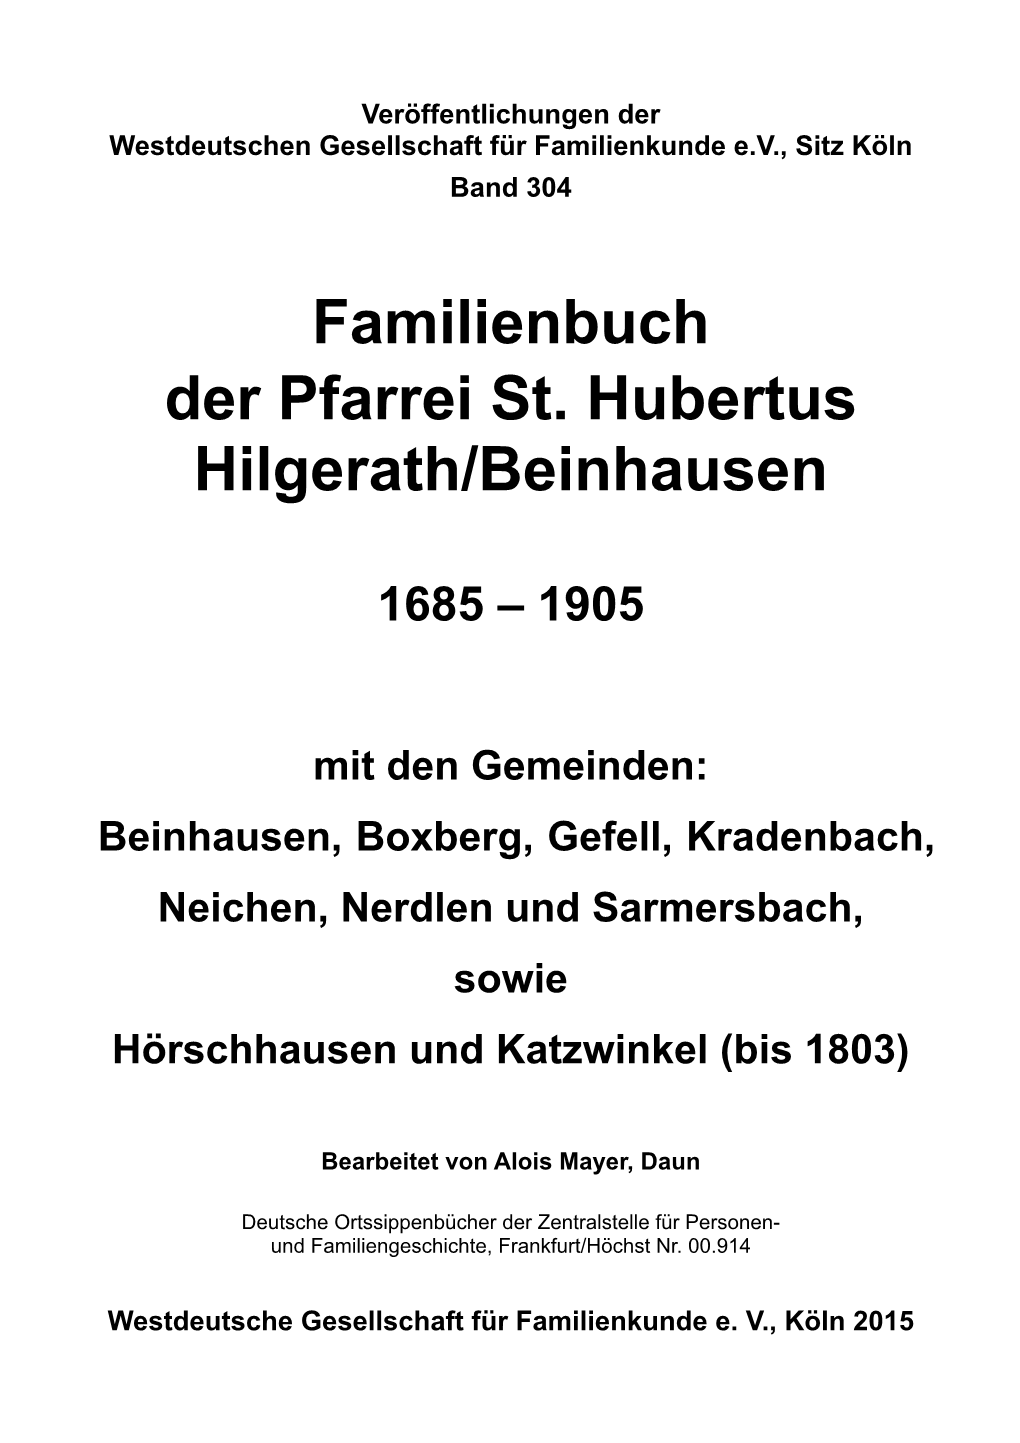 Familienbuch Hilgerath/Beinhausen 1685-1905